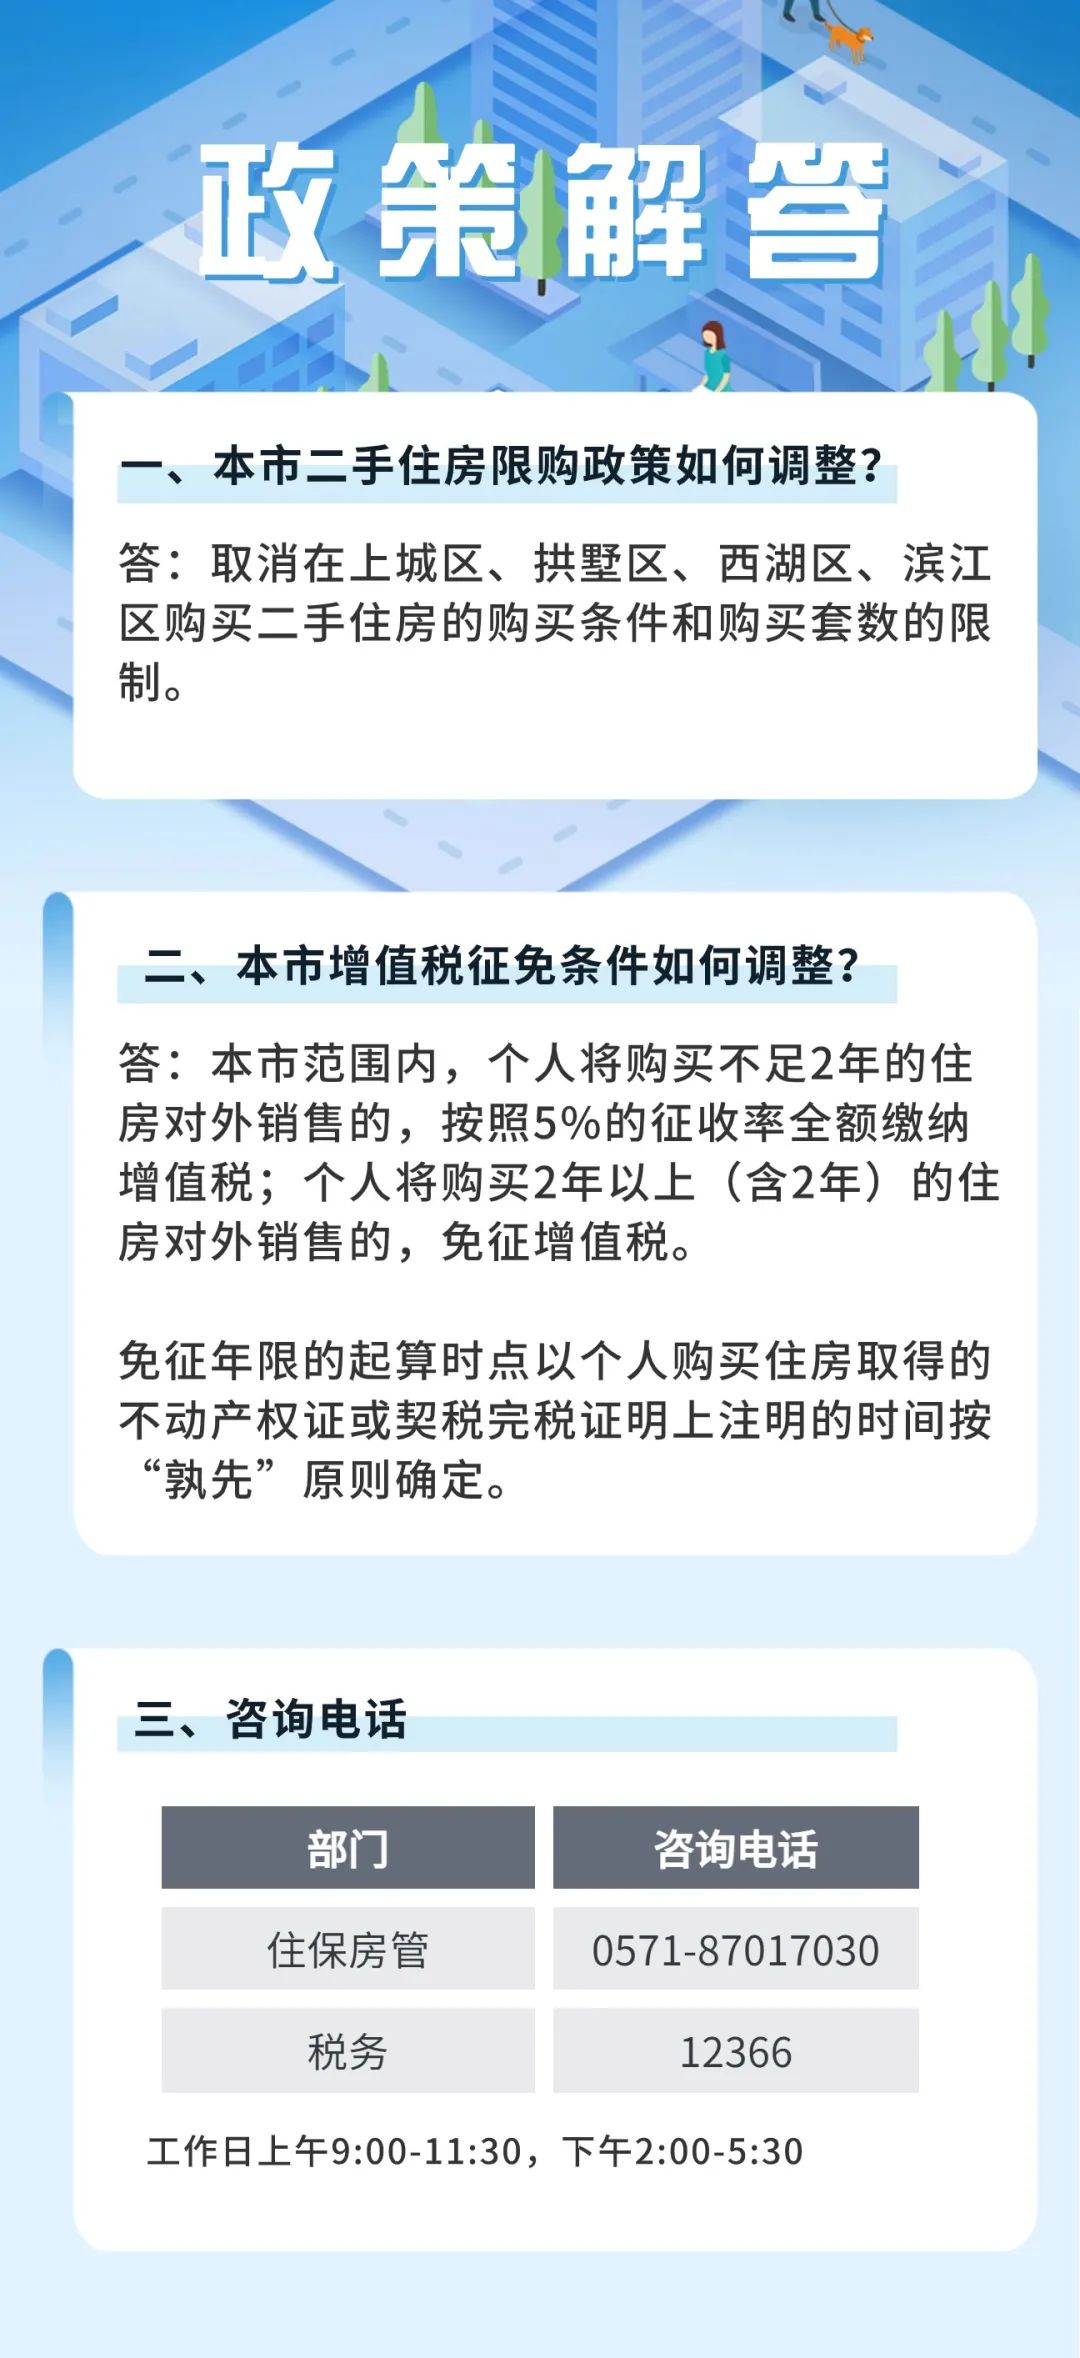 杭州：二手房不再审核购房人资格 卖房增值税征免年限统一调整为2年-公闻财经